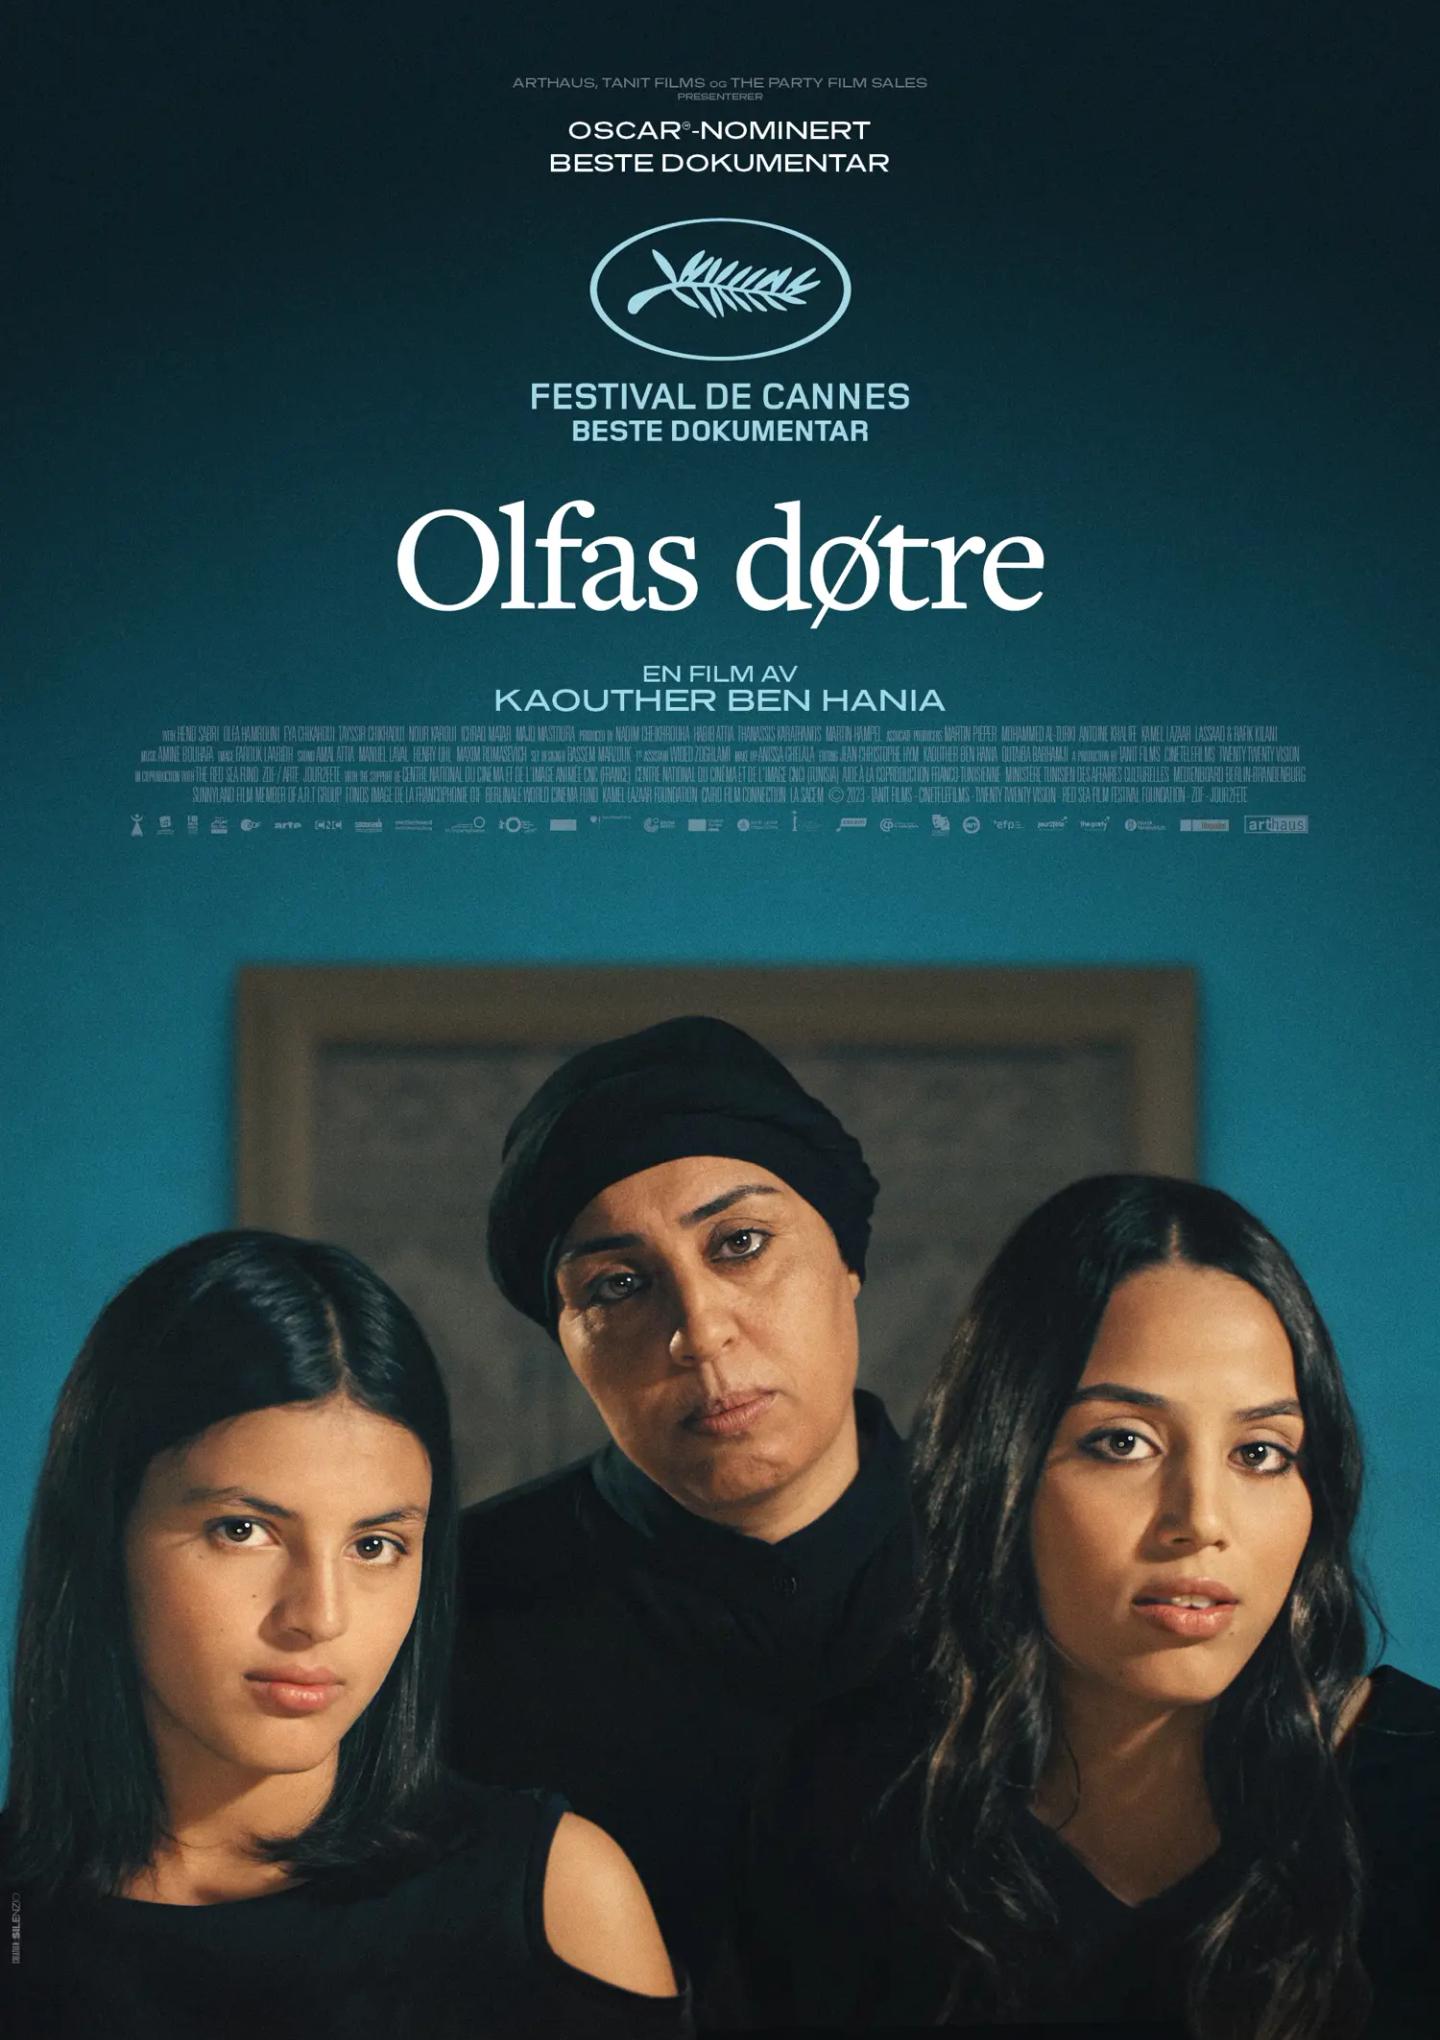 Plakat for 'Olfas døtre'